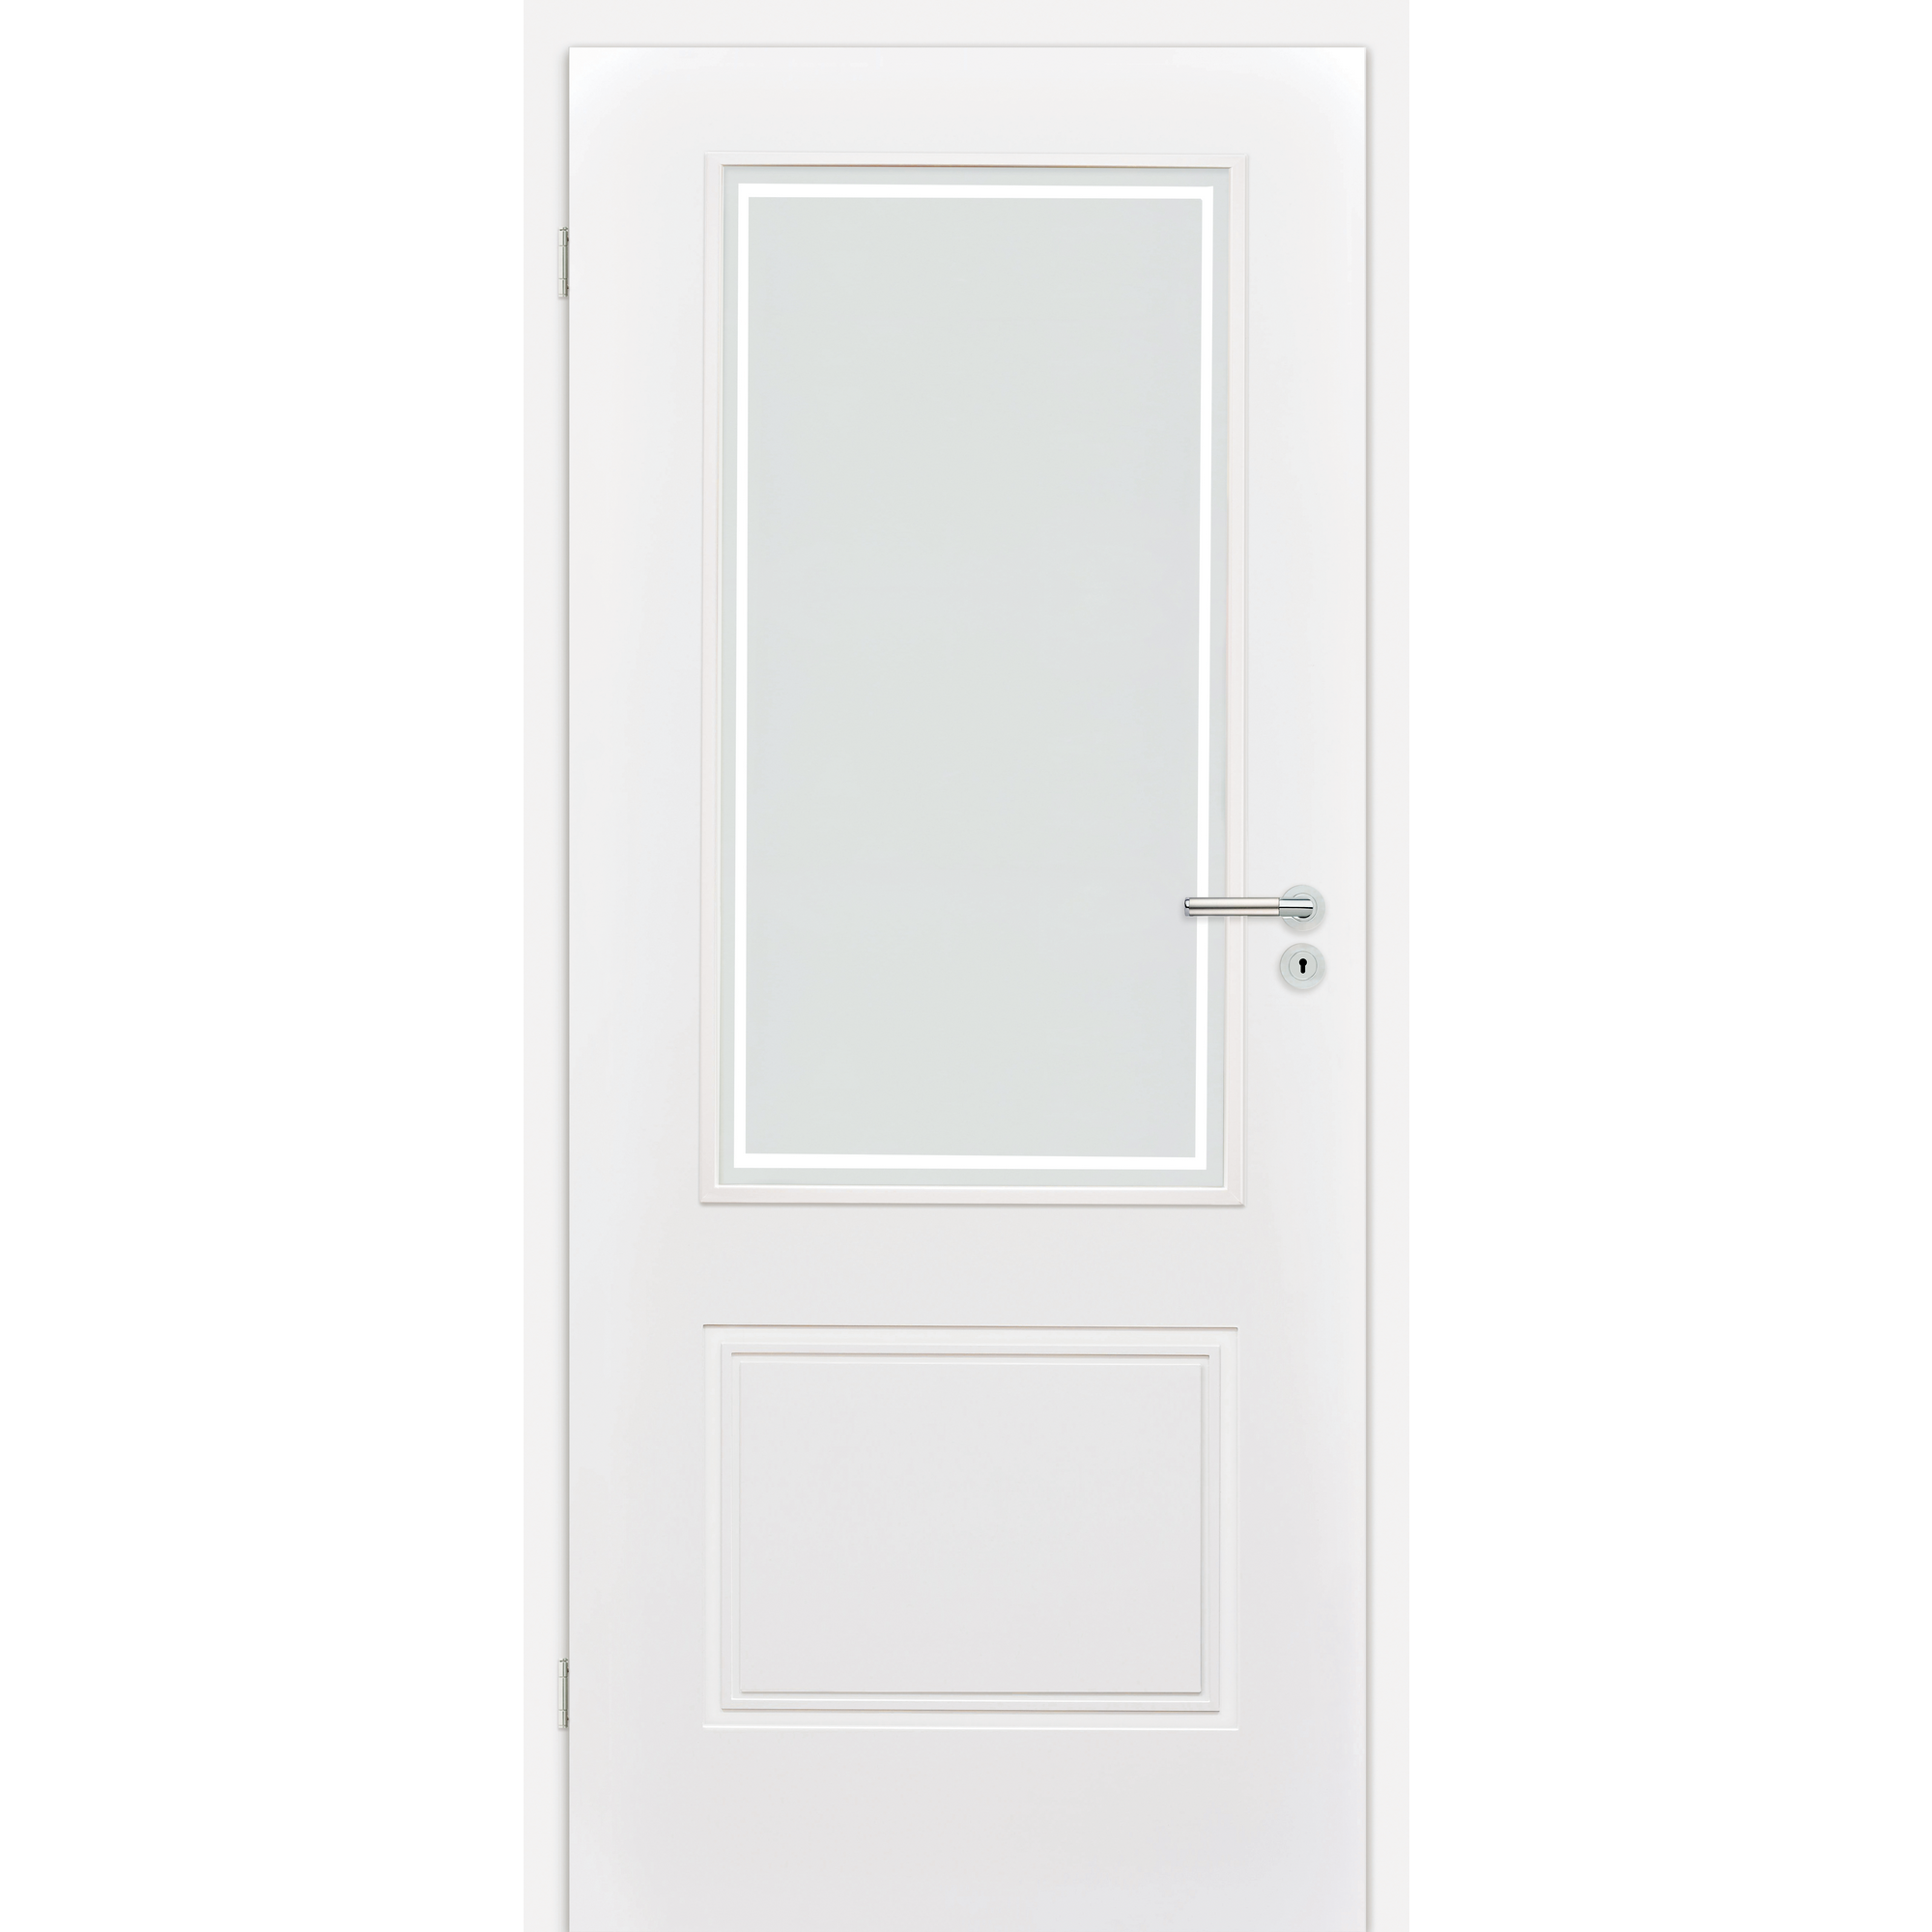 Innentür 'Linea 1.3 RS' mit Lichtausschnitt weiß 198,5 x 98,5 cm, Linksanschlag + product picture